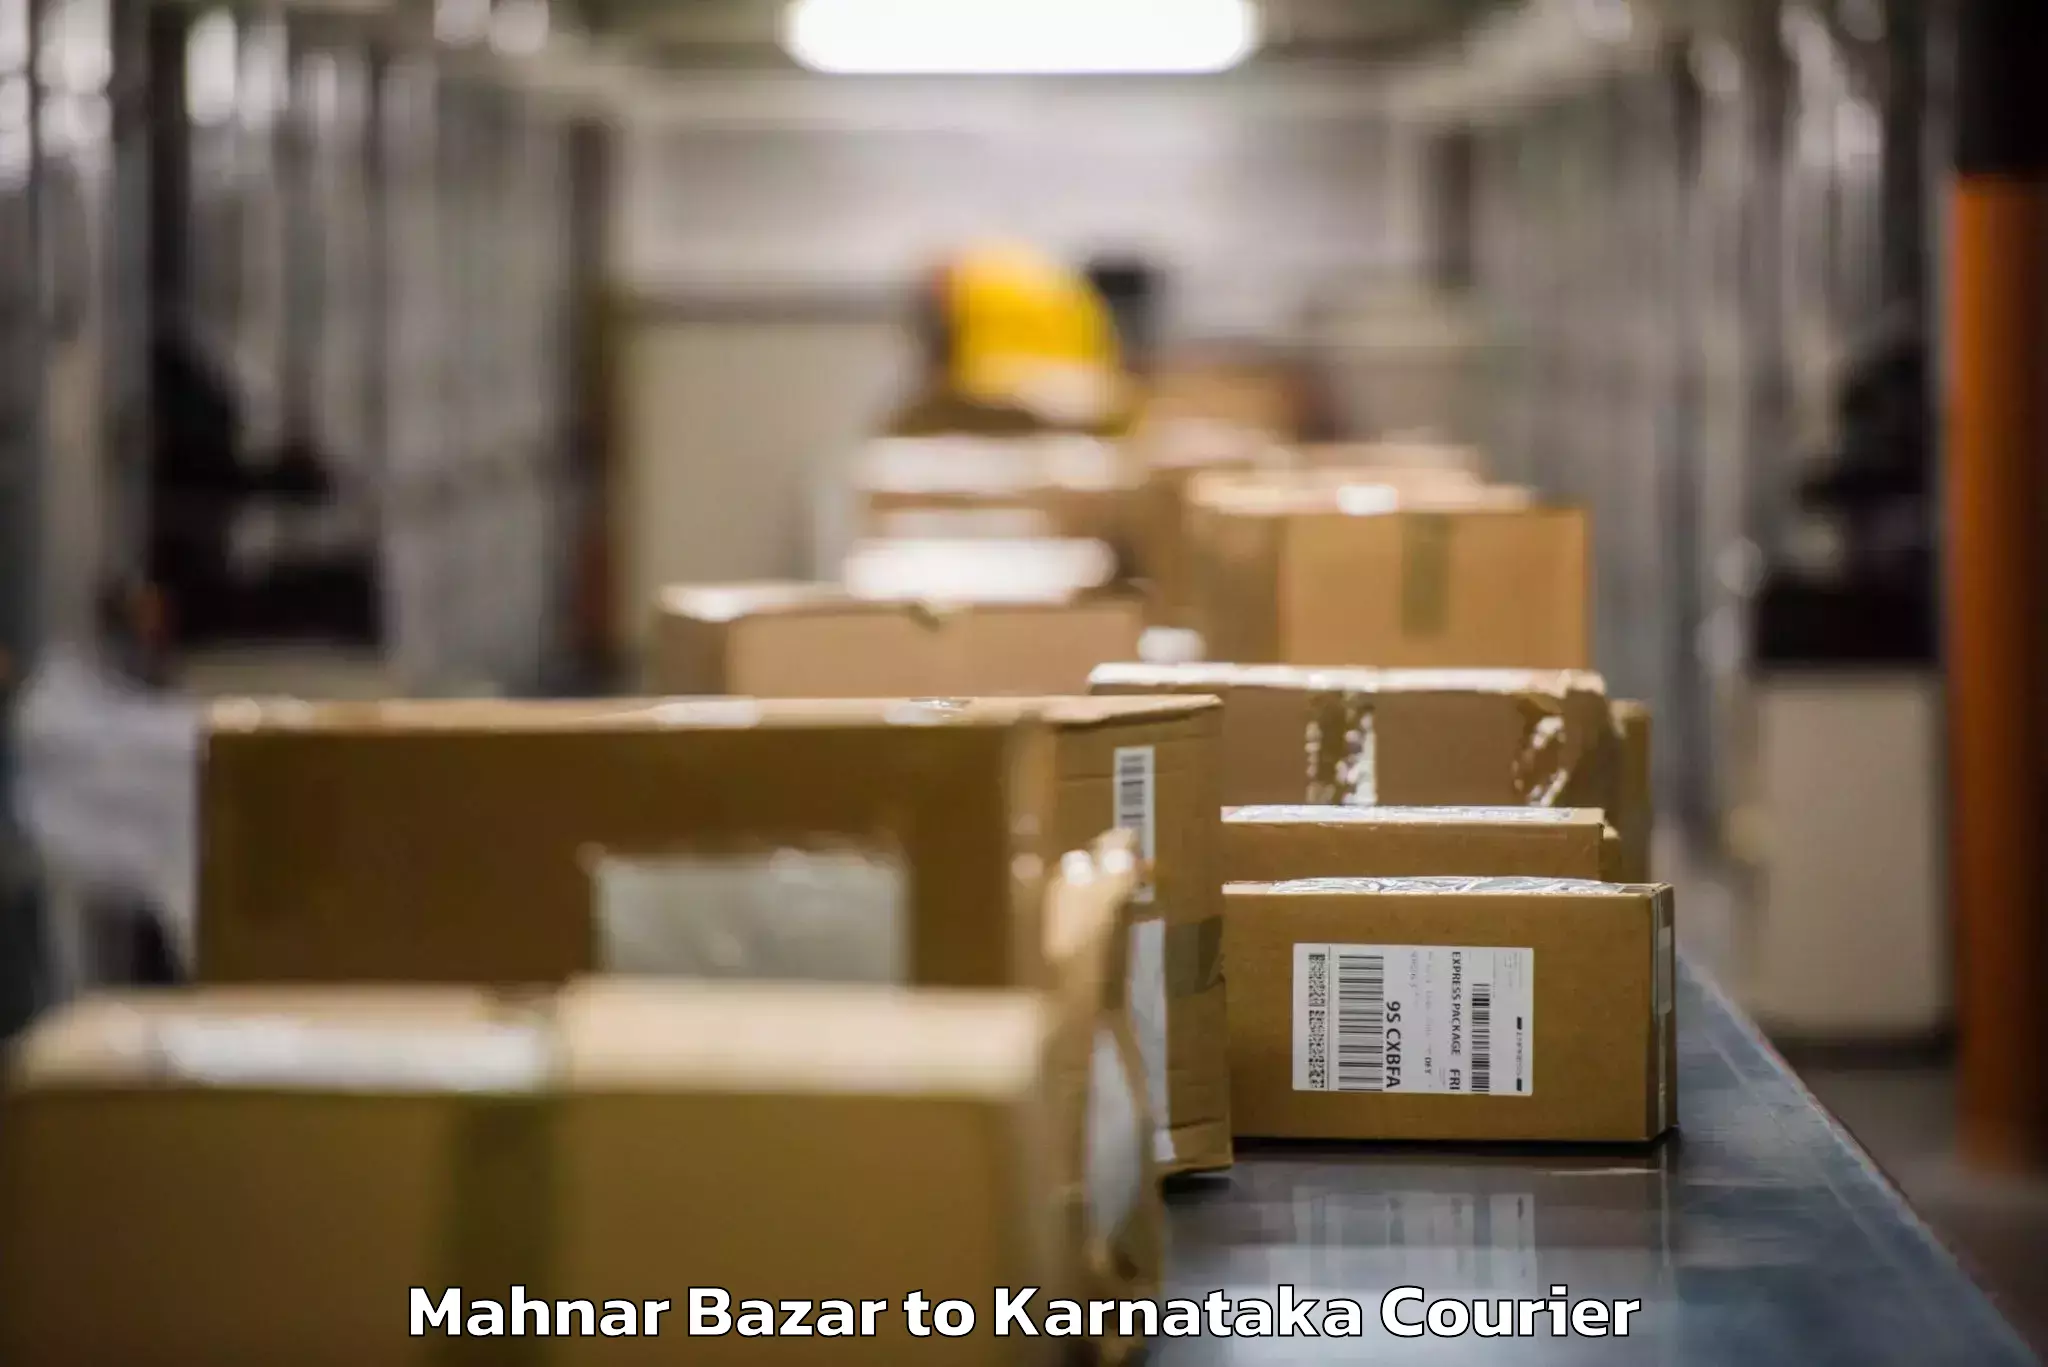 Baggage shipping rates calculator Mahnar Bazar to Karnataka